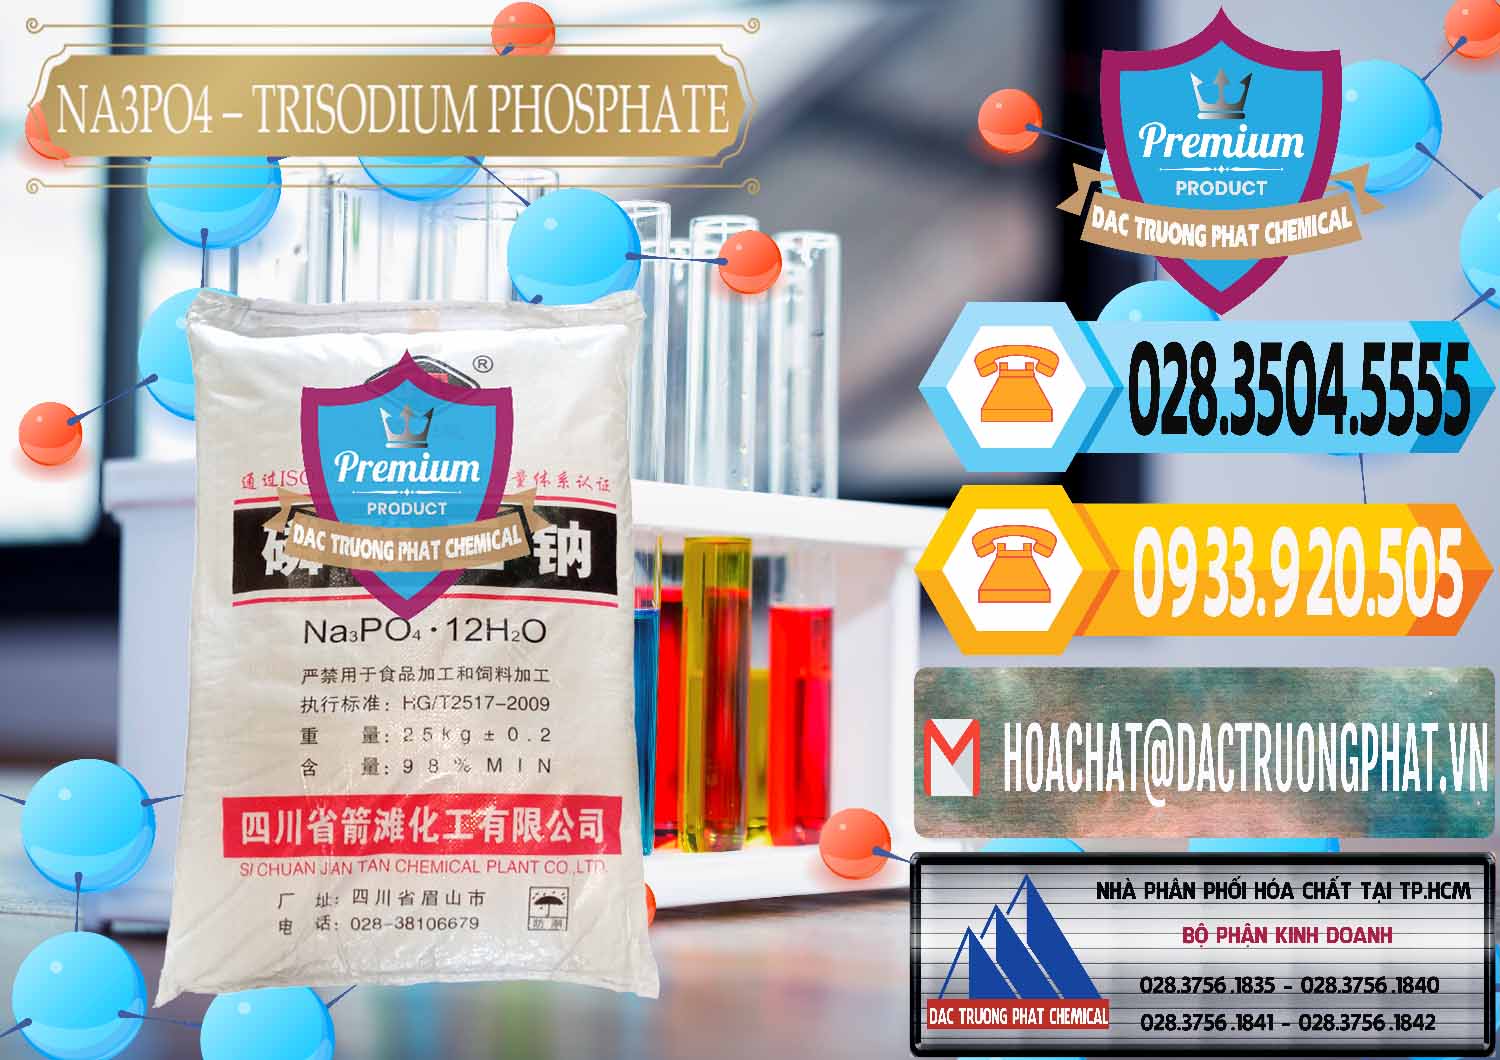 Cty chuyên cung ứng ( bán ) Na3PO4 – Trisodium Phosphate Trung Quốc China JT - 0102 - Công ty phân phối và cung cấp hóa chất tại TP.HCM - hoachattayrua.net